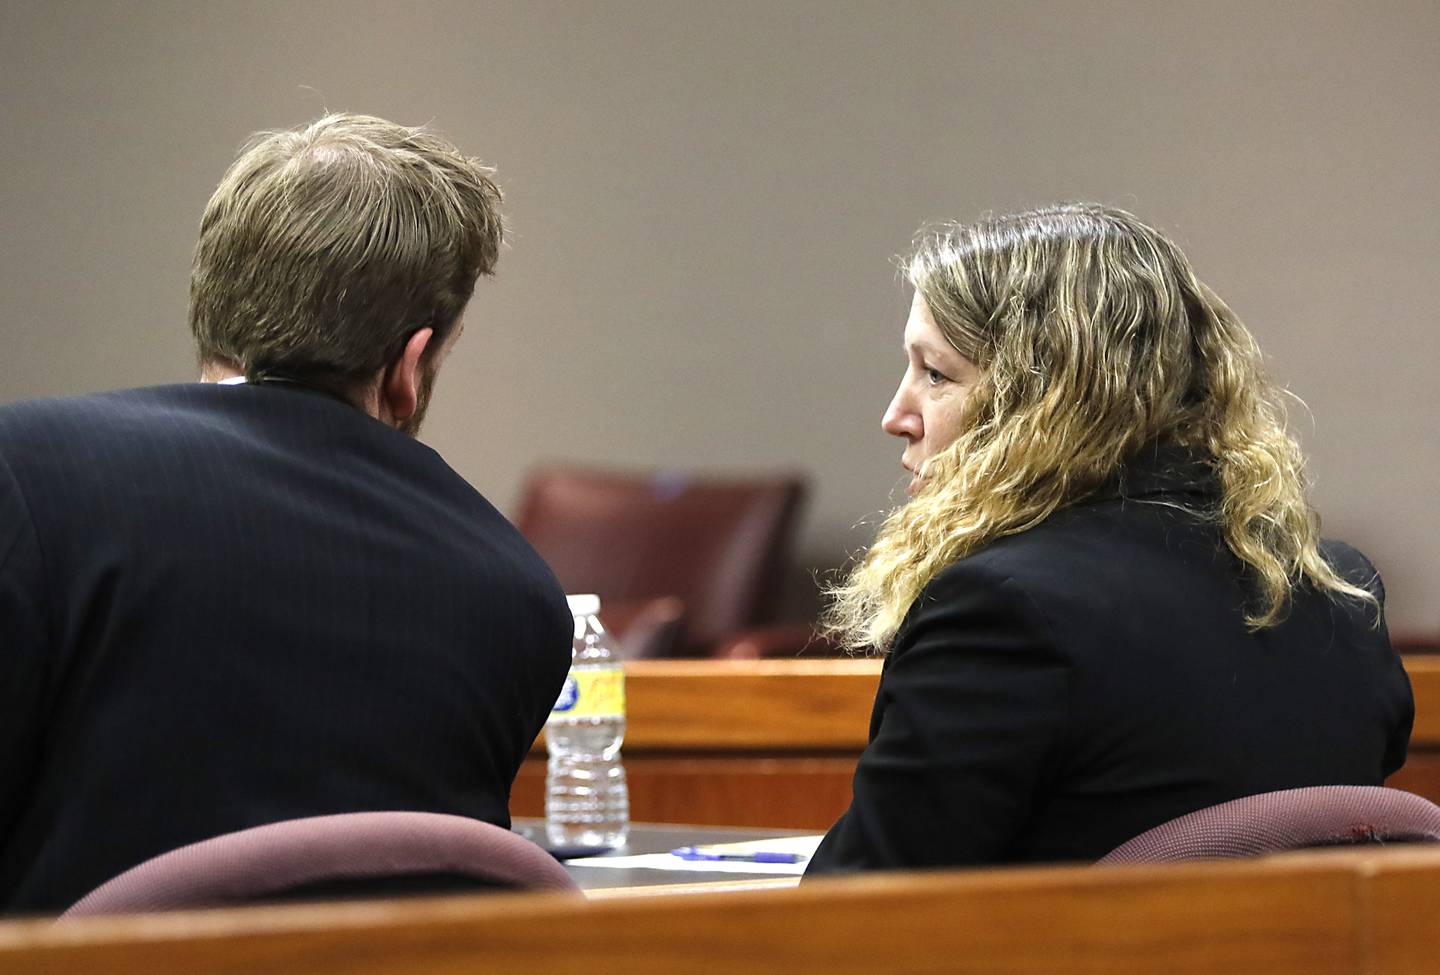 州检察官 Tyler Mikan 和 Sharyl Eisenstein 于 2022 年 11 月 14 日星期一在法官 Michael Coppig 对 56 岁的 Robert J. Gould 的审判中发表讲话。 戈尔德在 2017 年被捕时被列入麦克亨利县的头号通缉犯名单，他被指控从 2001 年开始多次对两名婴儿期的儿童进行性虐待。